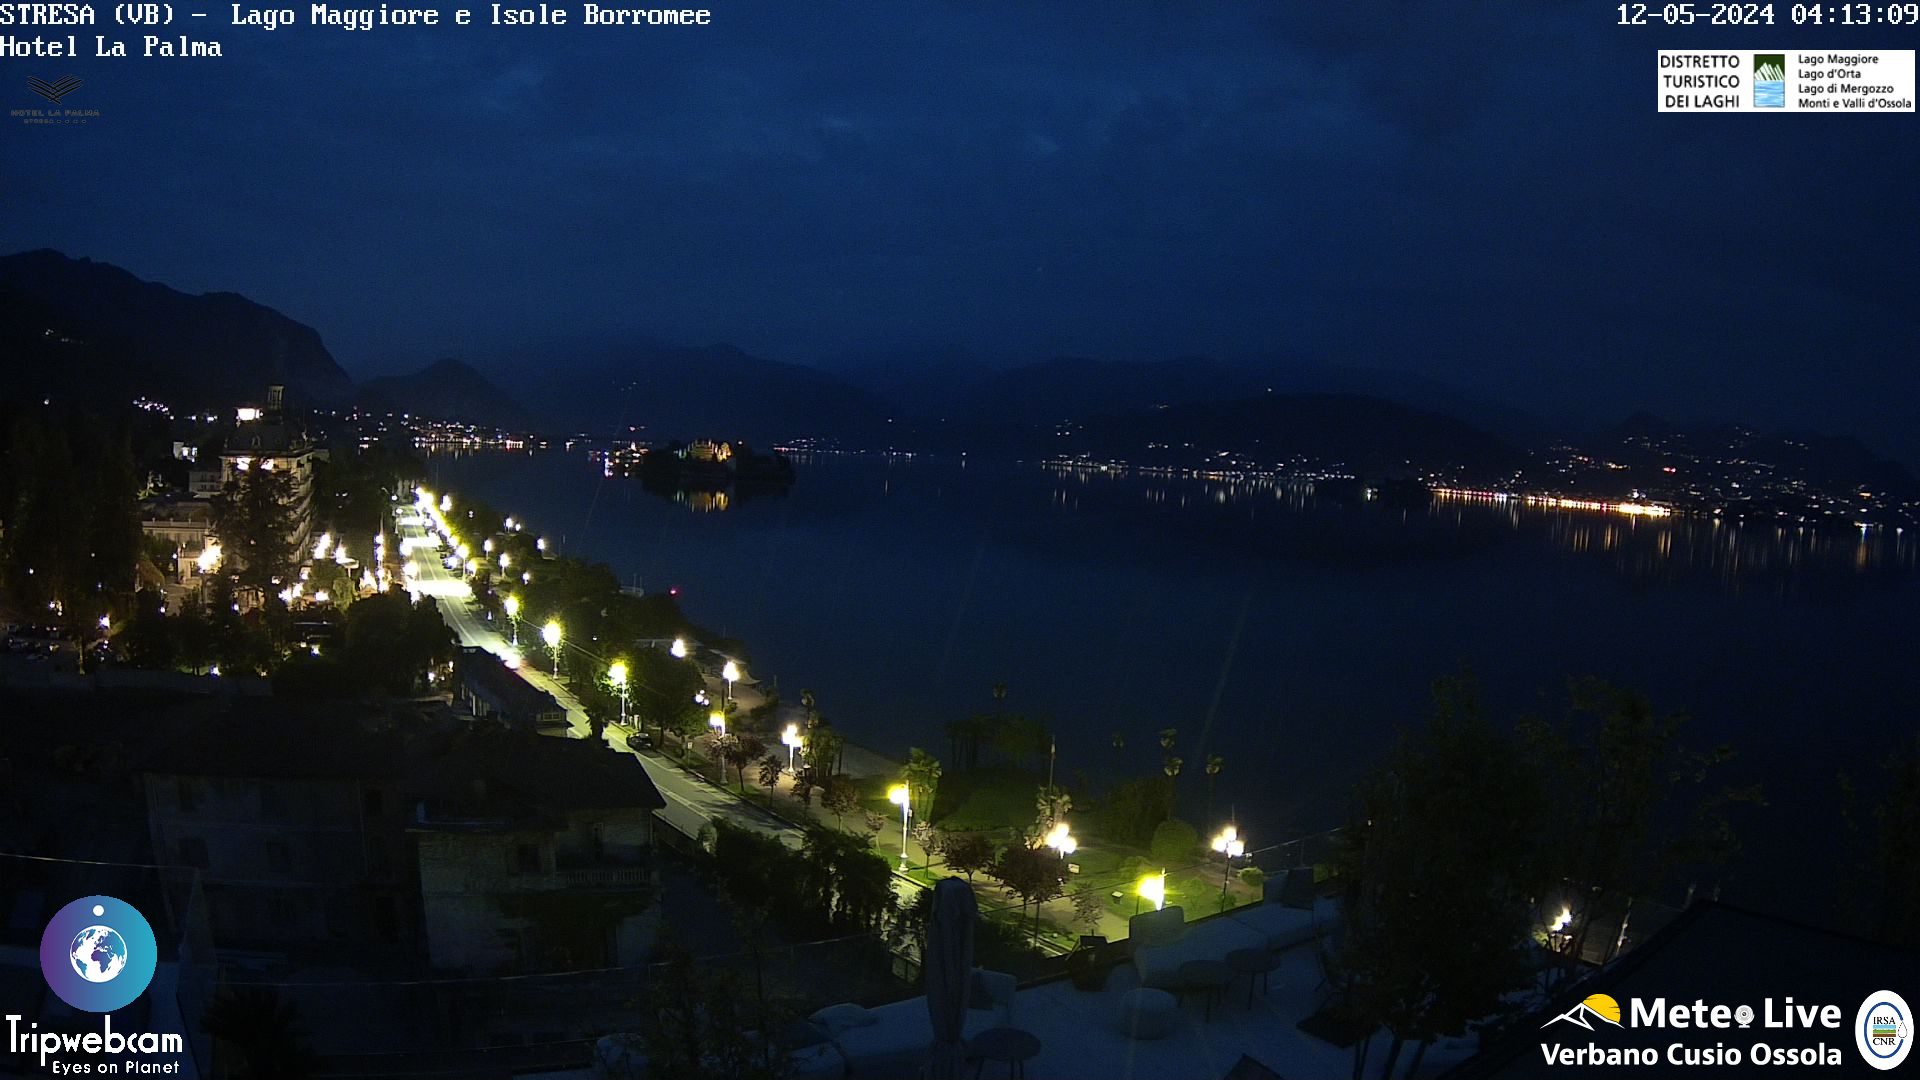 Stresa (Lago Maggiore) Tor. 05:17